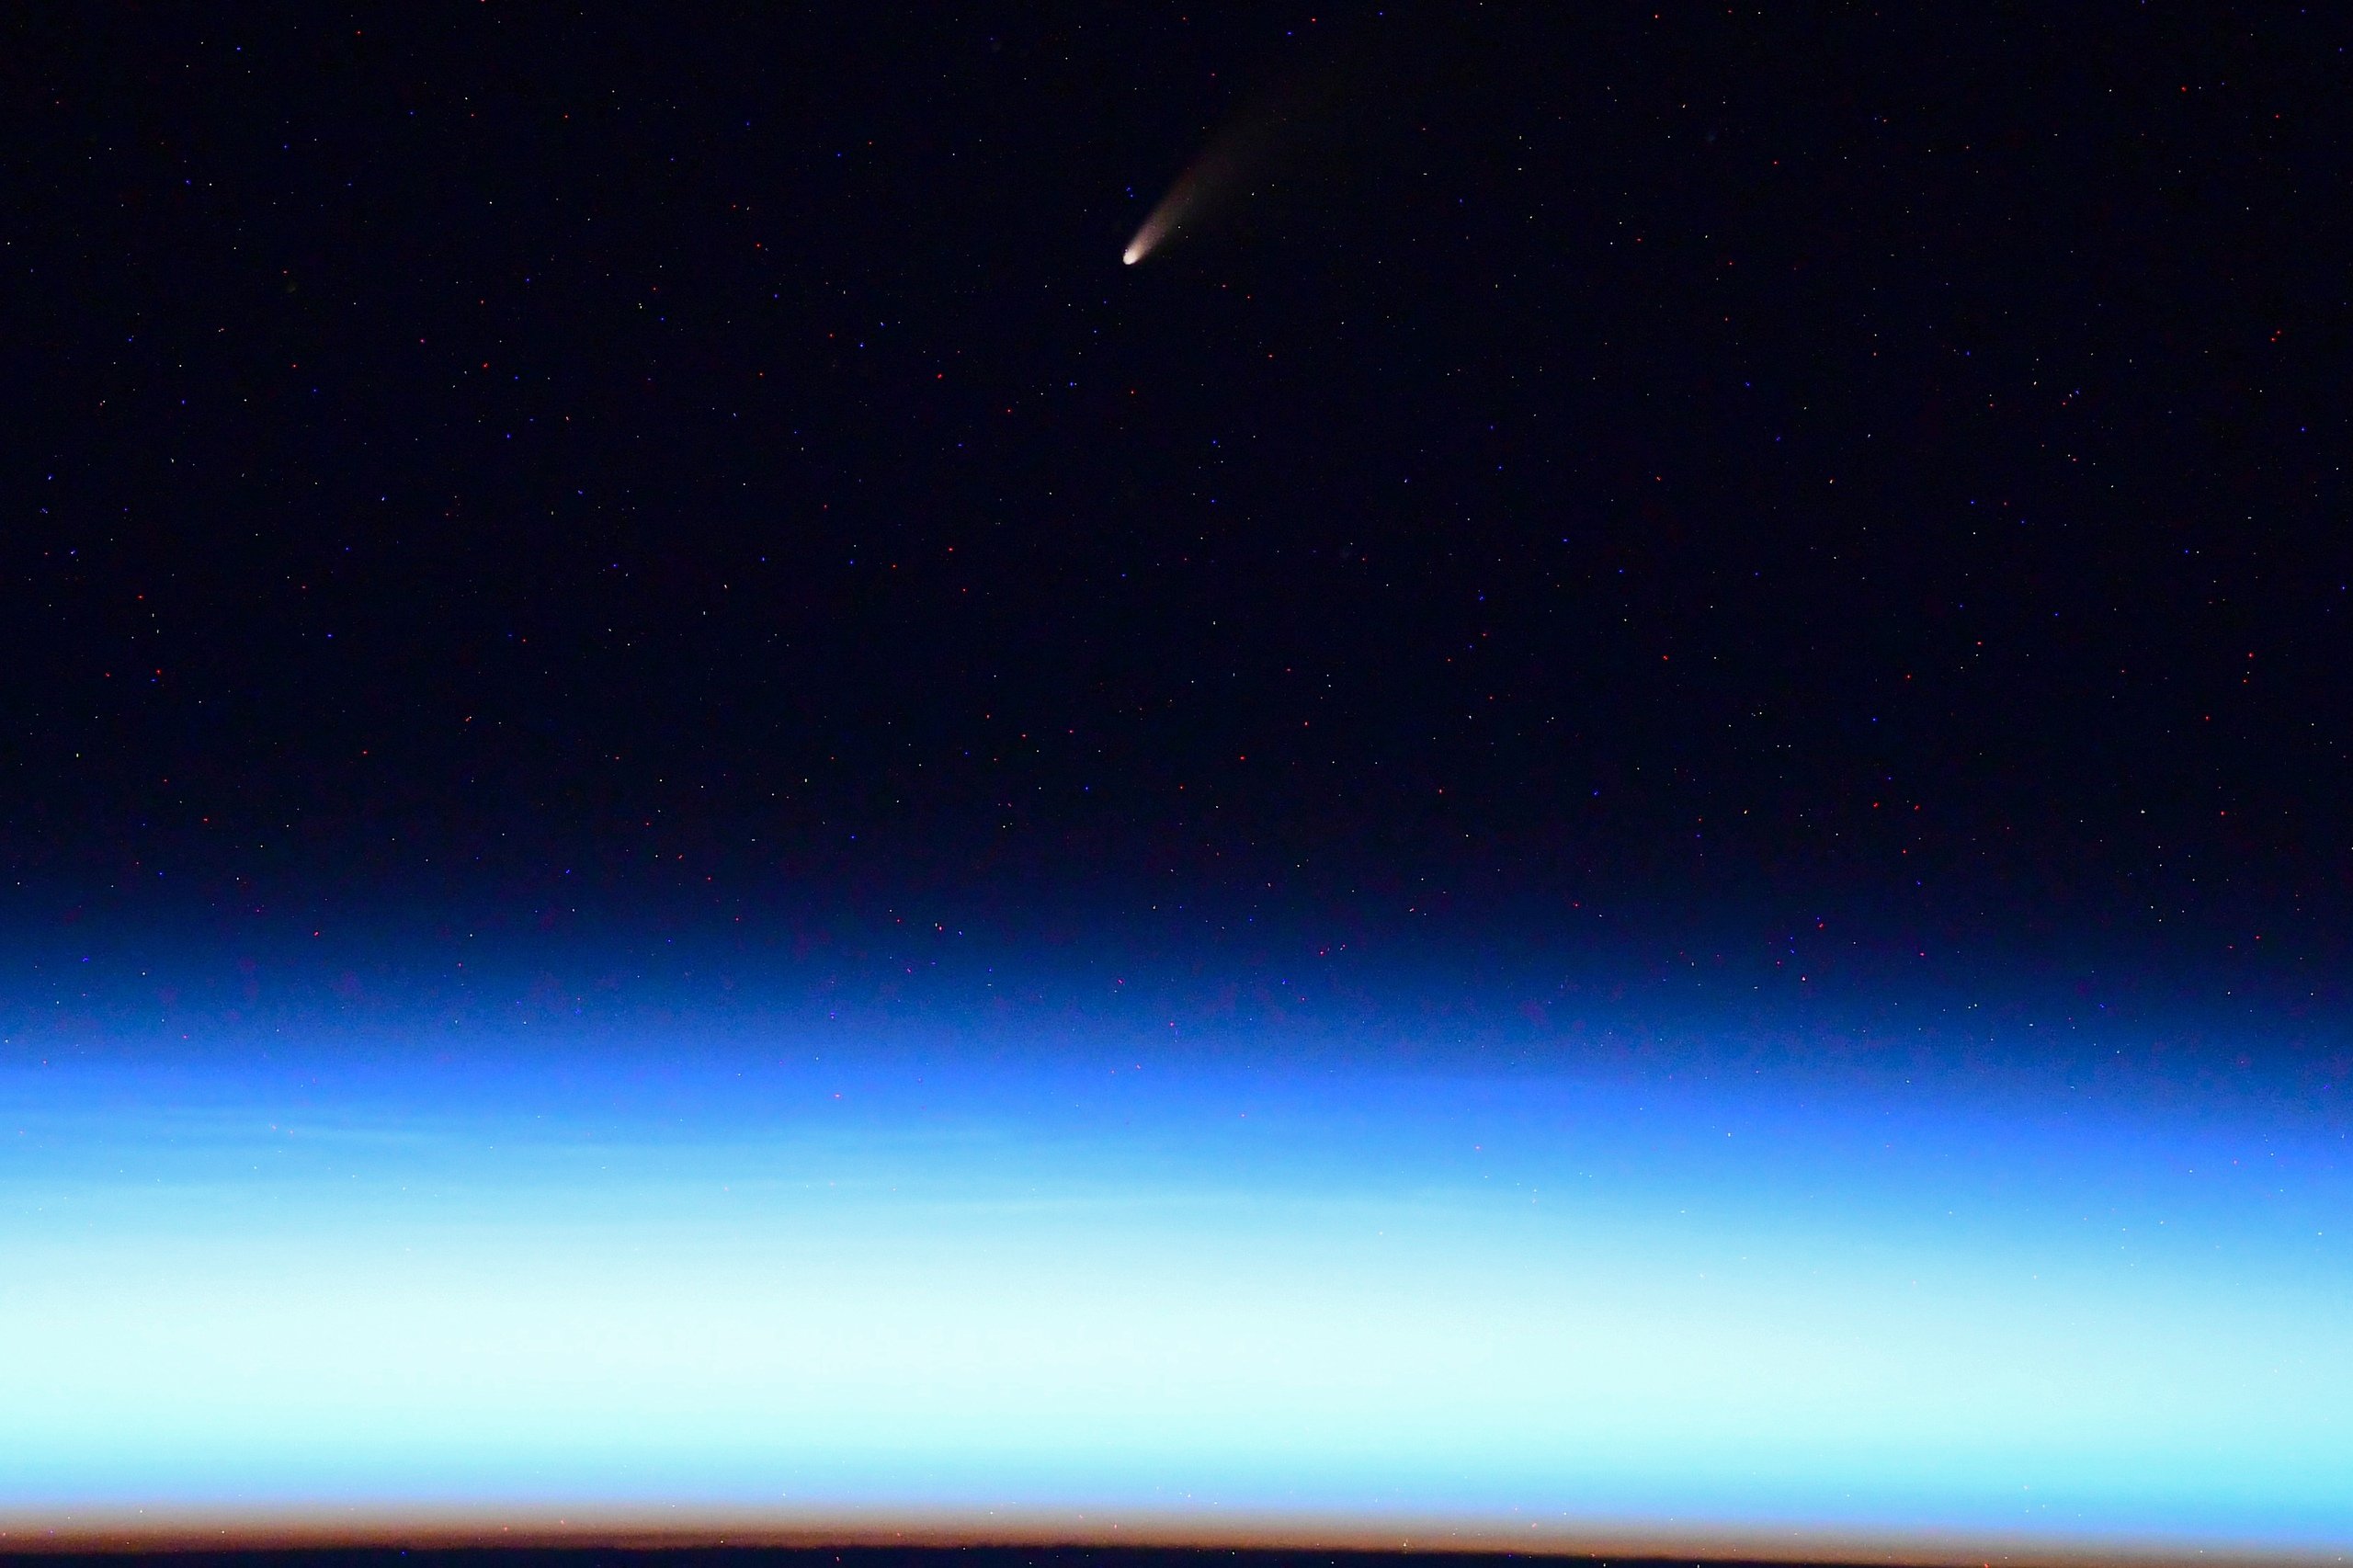 El cometa NEOWISE visto desde la ISS